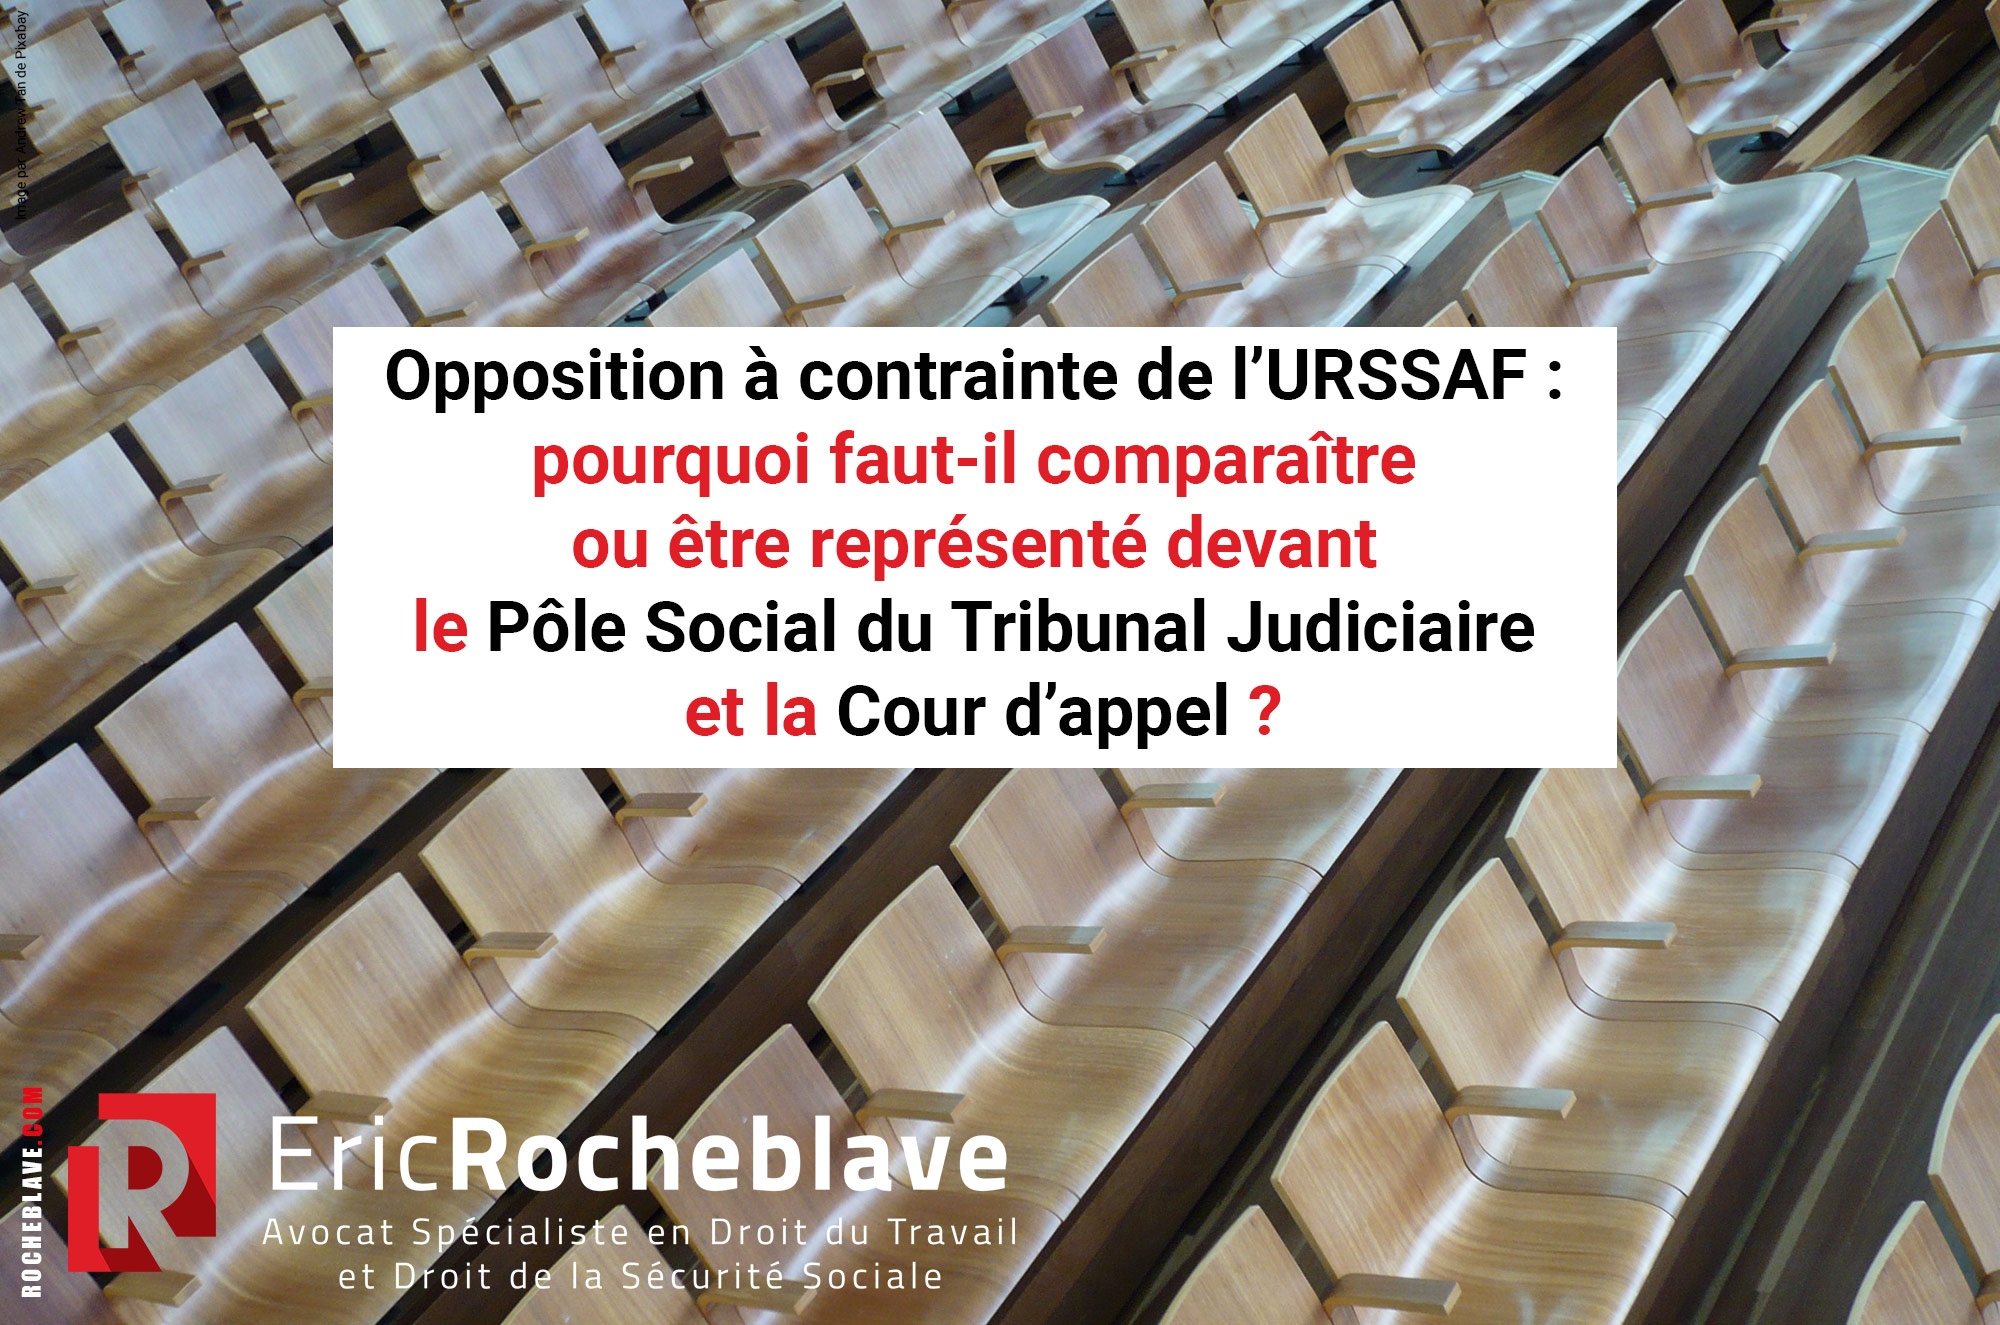 Opposition à contrainte de l’URSSAF : pourquoi faut-il comparaître ou être représenté devant le Pôle Social du Tribunal Judiciaire et la Cour d’appel ?